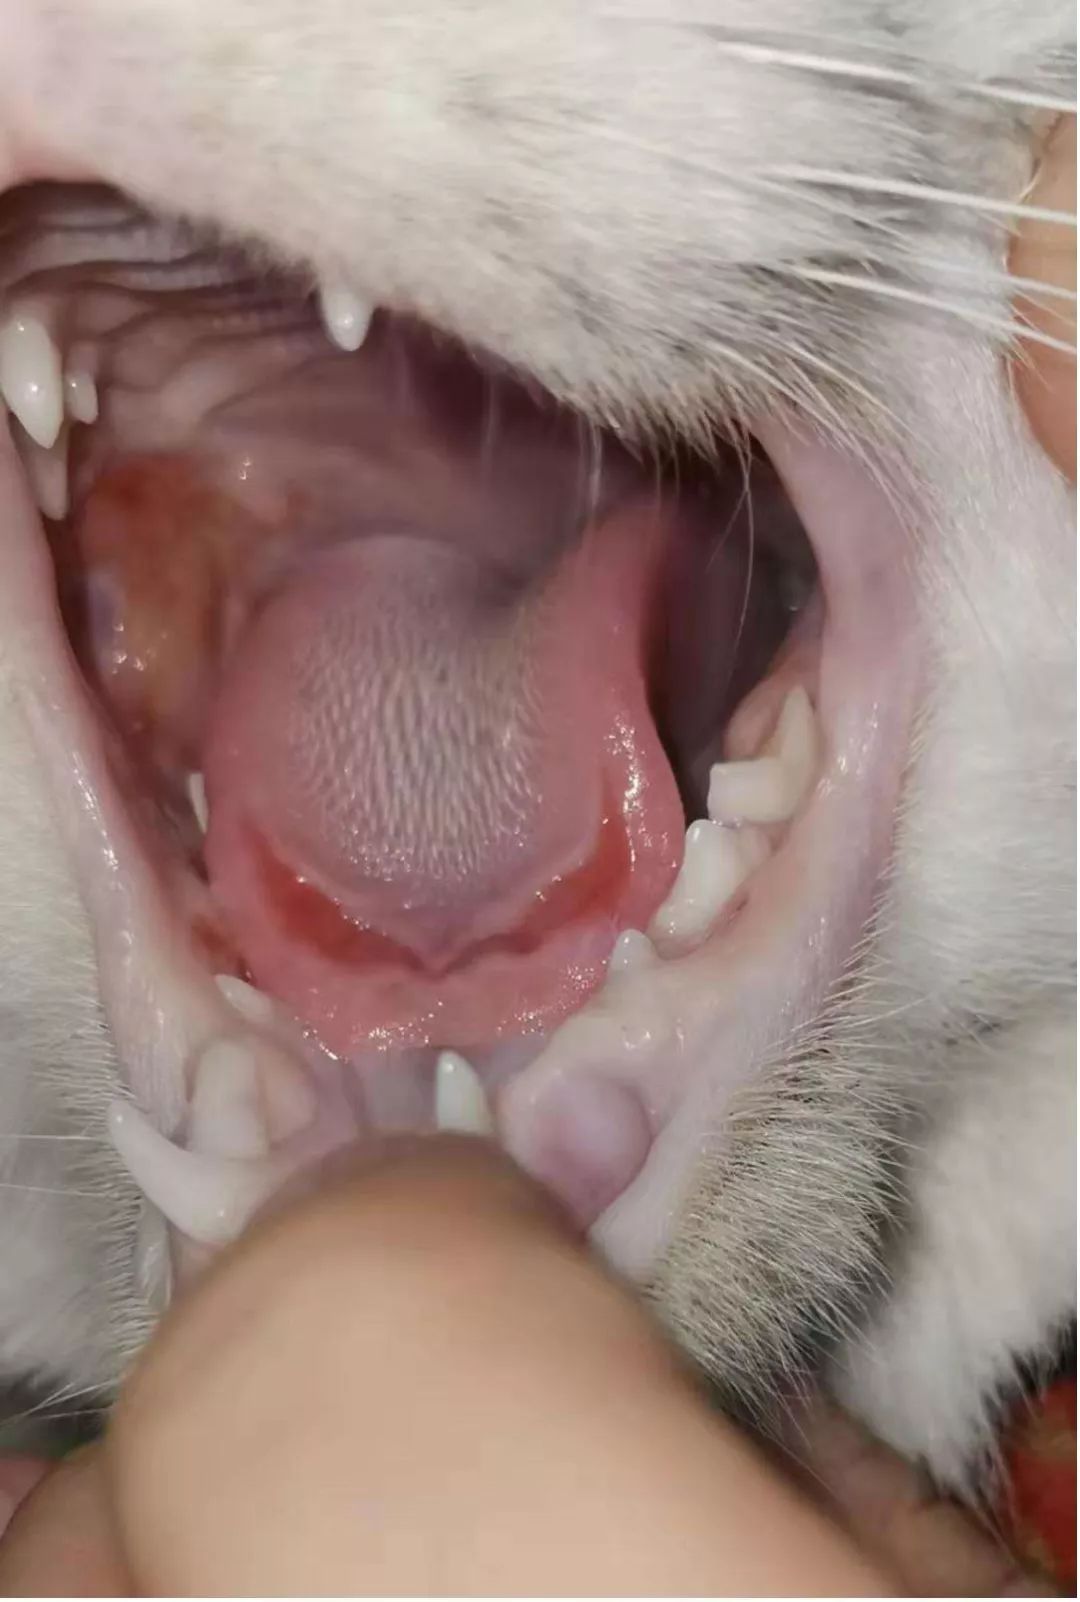 一例猫咪重度细菌性口炎的治疗案例